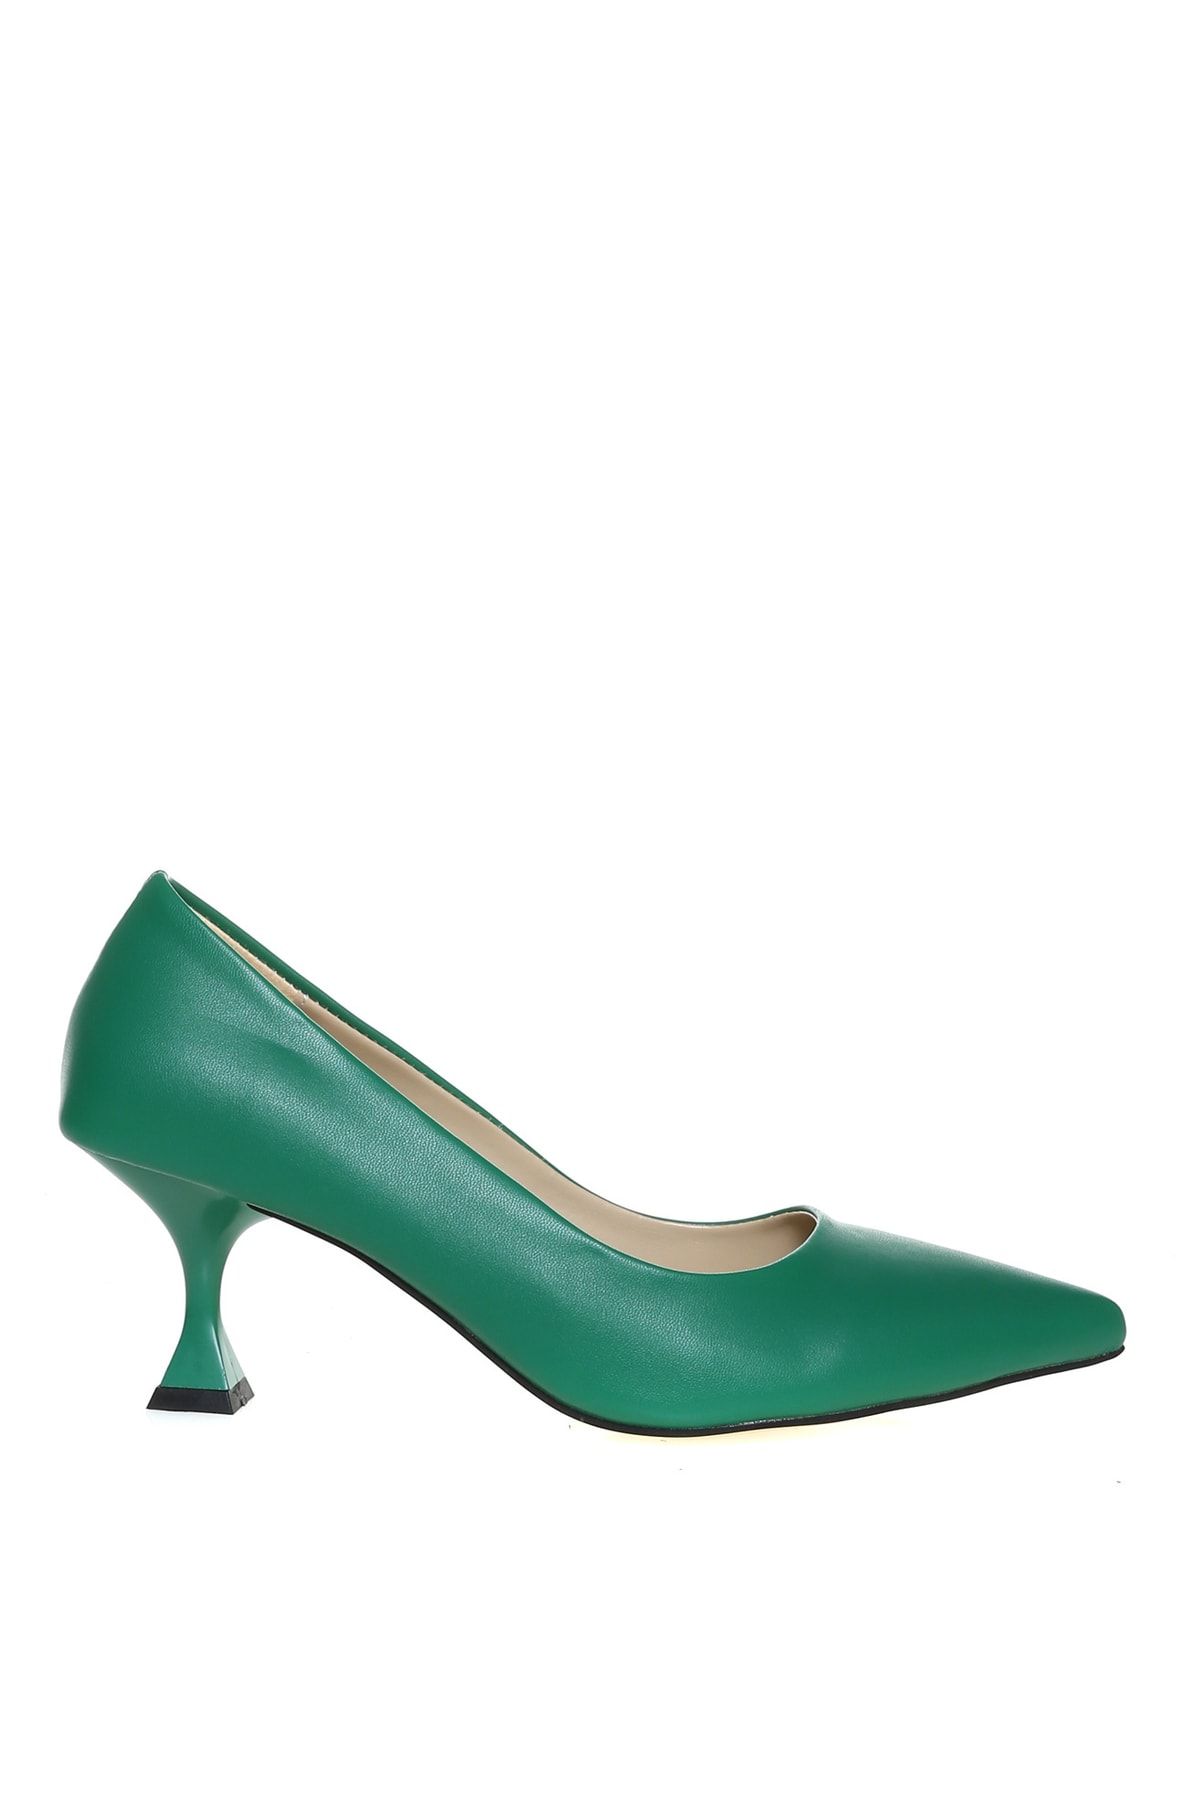 Fabrika Suni Deri Yeşil Kadın Topuklu Ayakkabı Massa